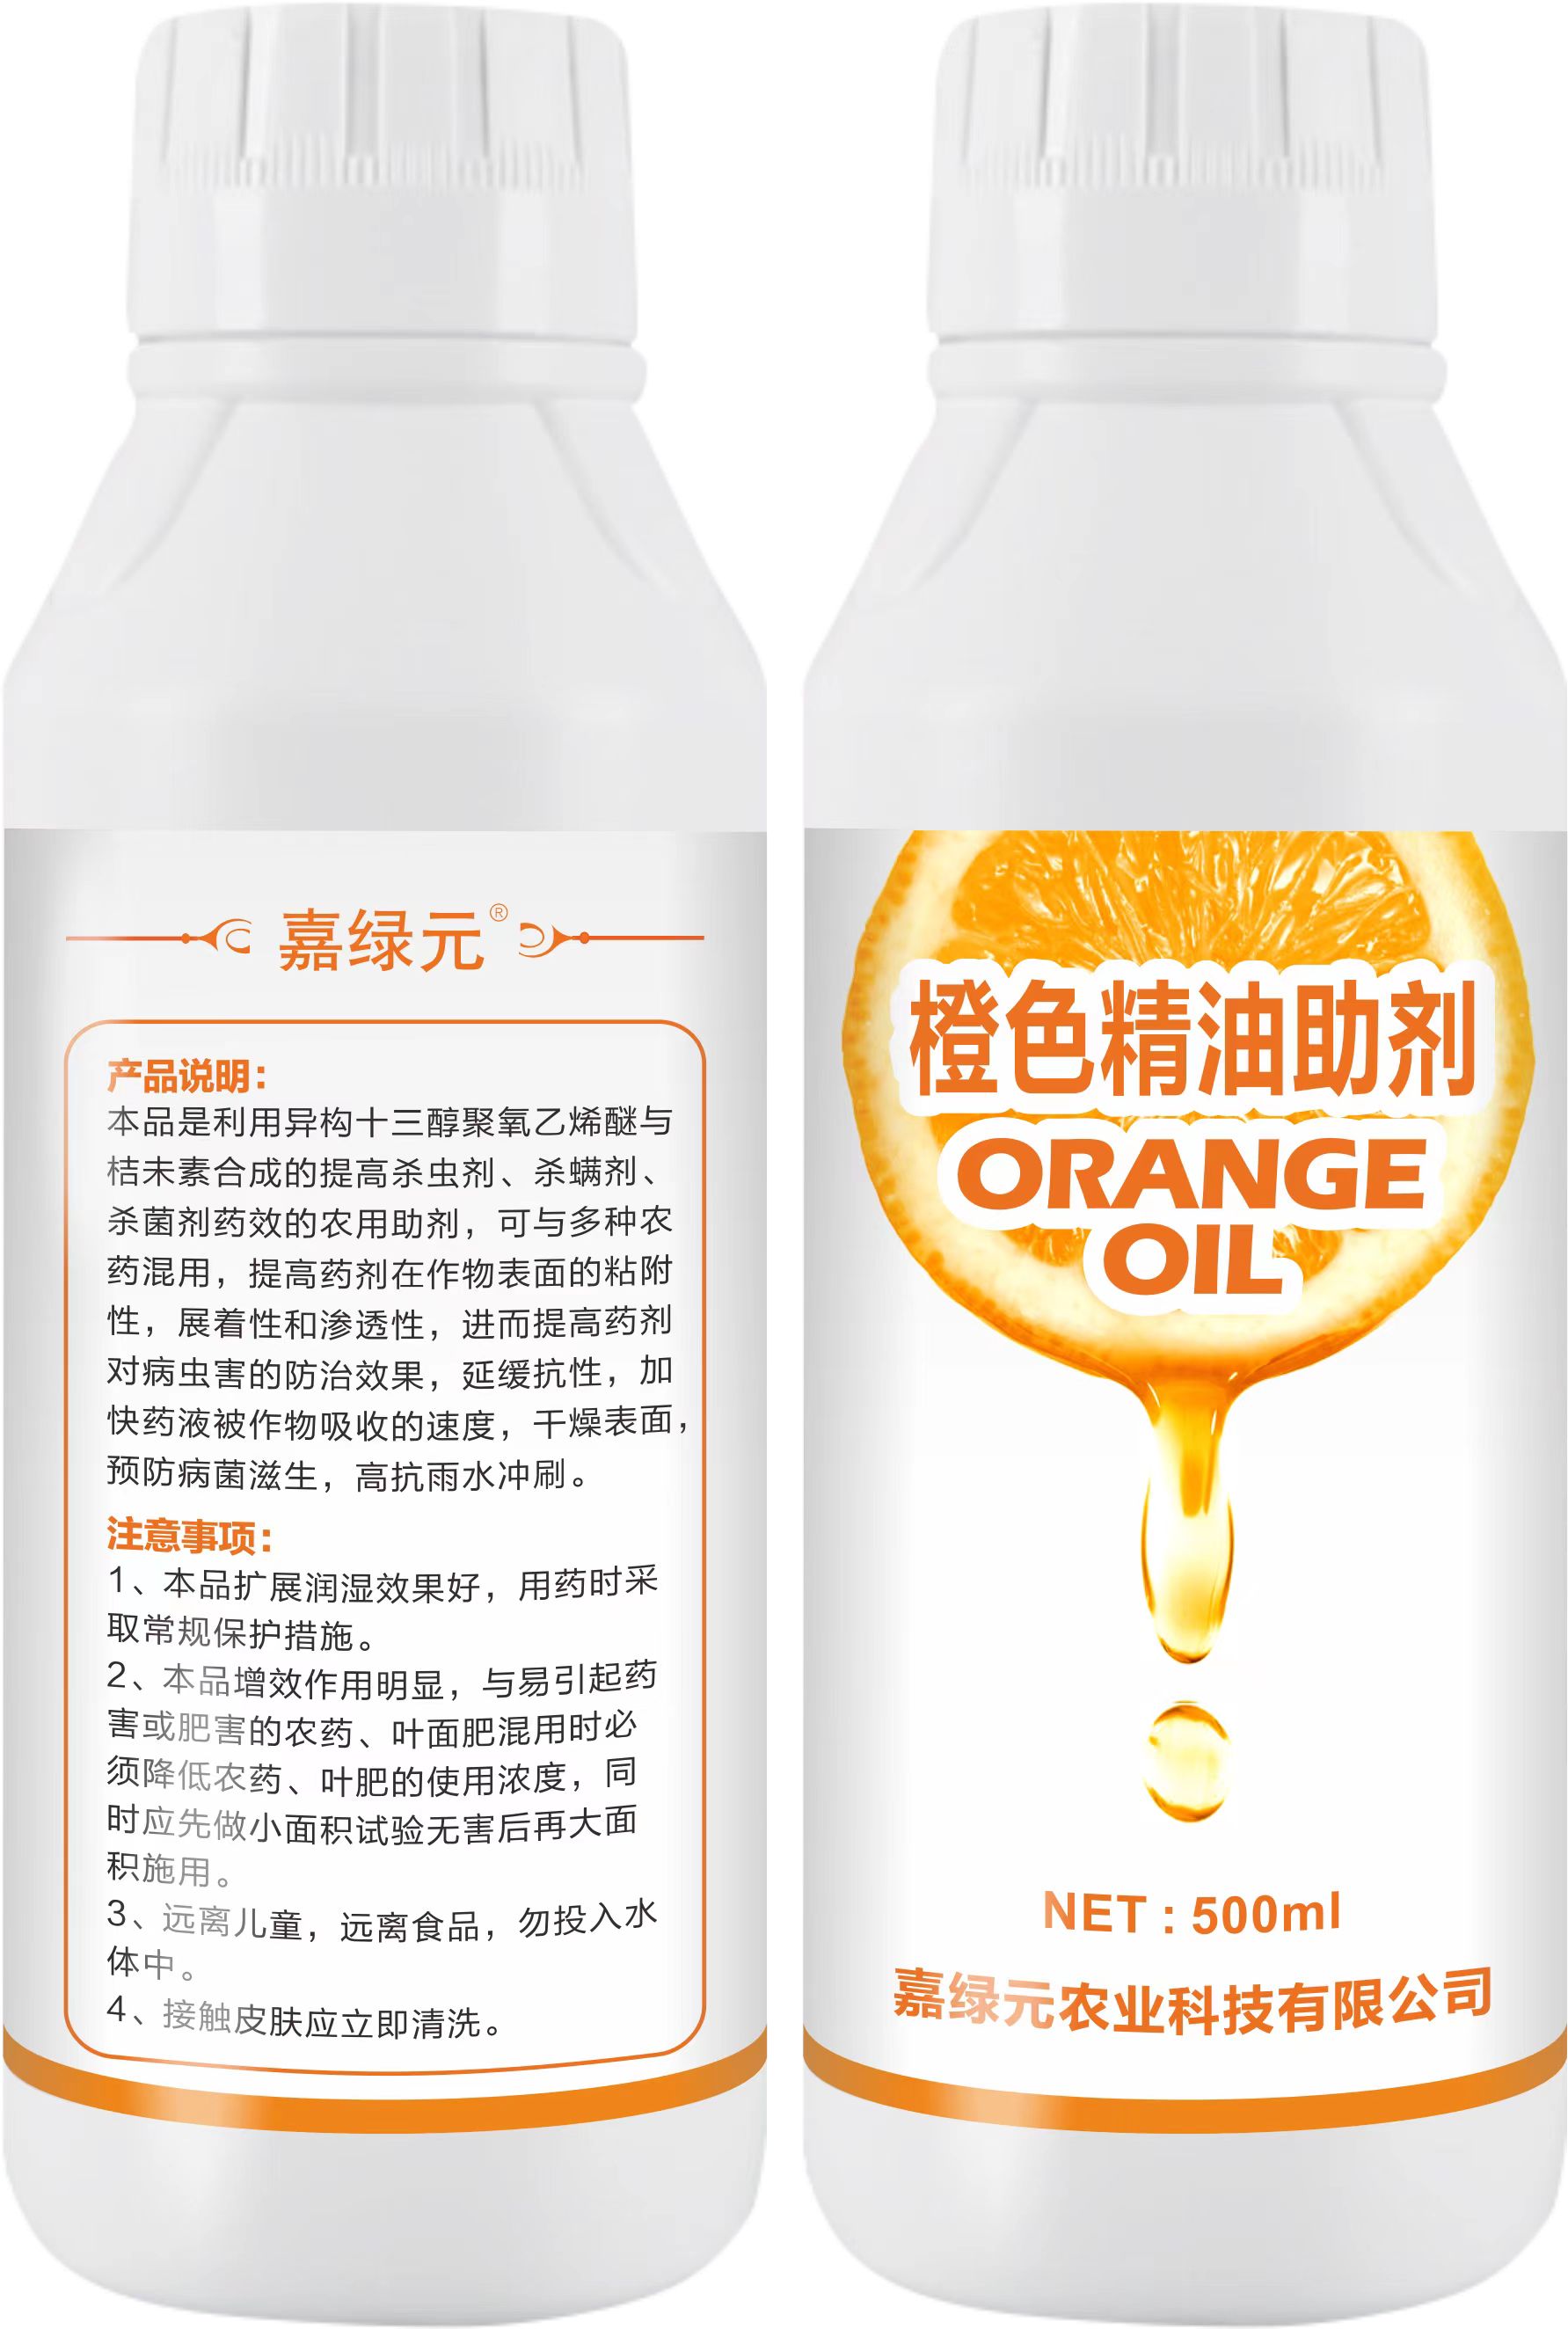 嘉绿元-- 橙色精油助剂